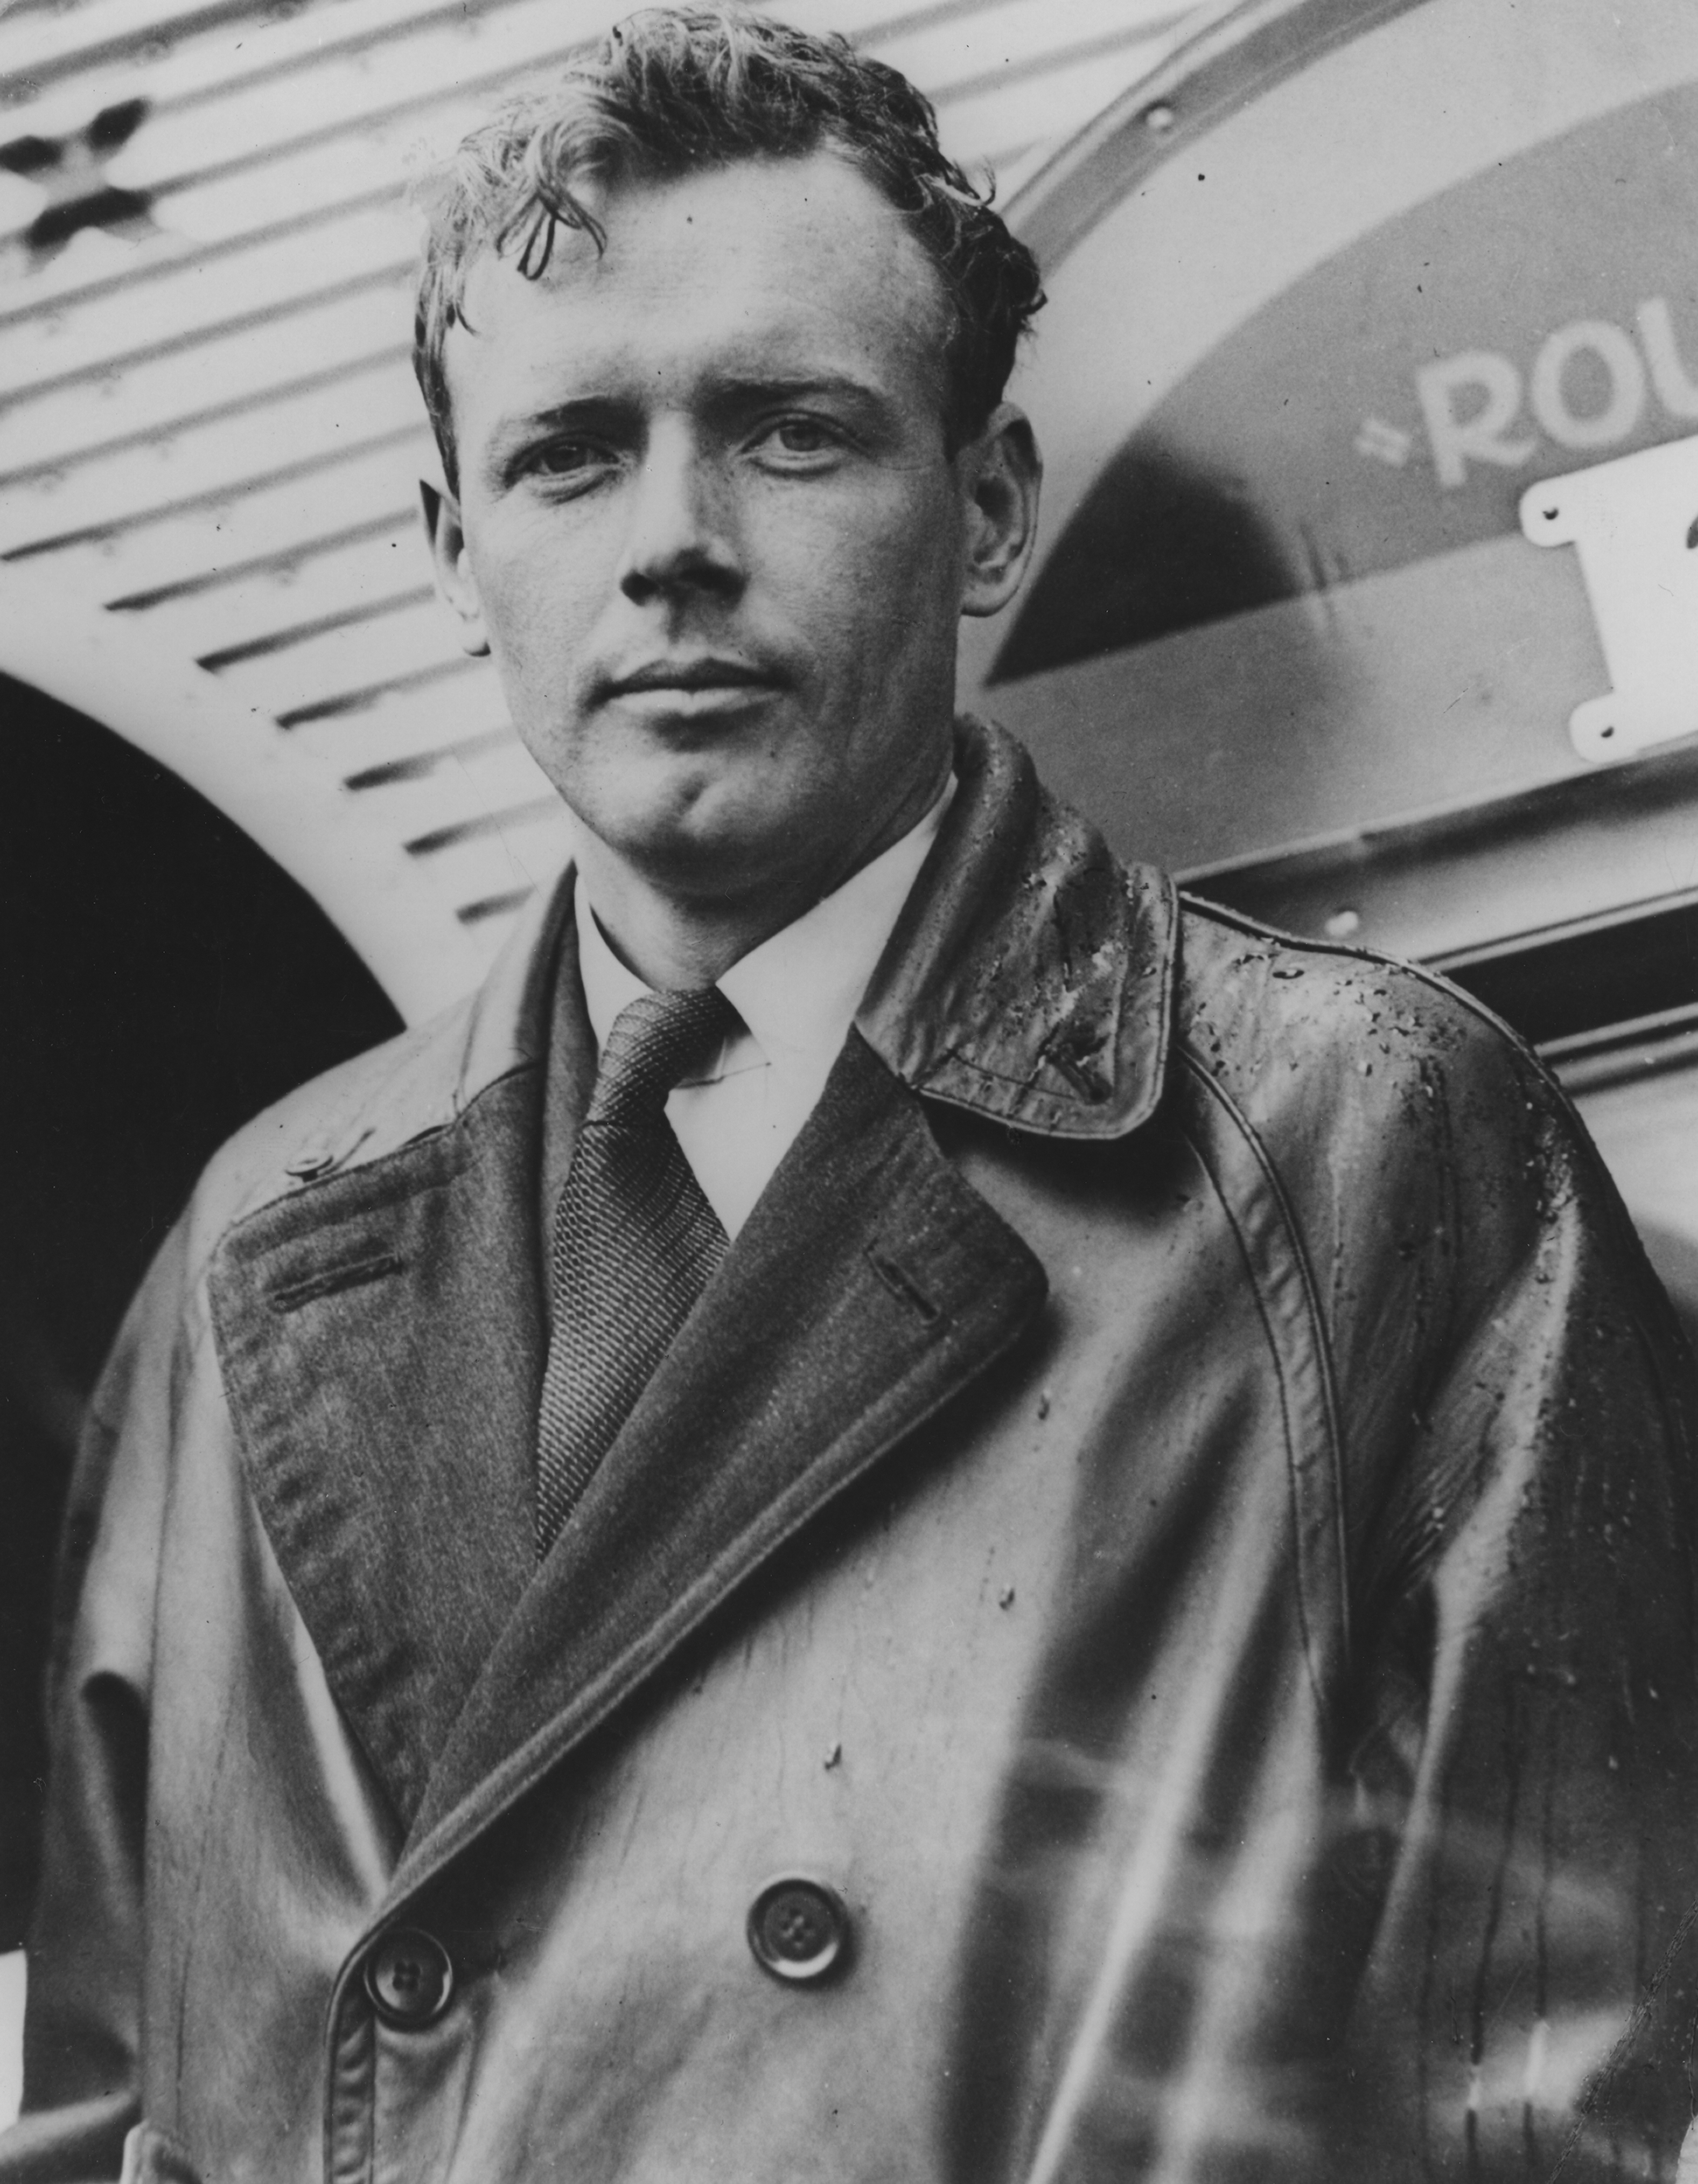 Der 1930 gesehene Militäroffizier Lindbergh galt als amerikanischer Held, weil er der erste Mensch war, der nonstop von New York City nach Paris flog